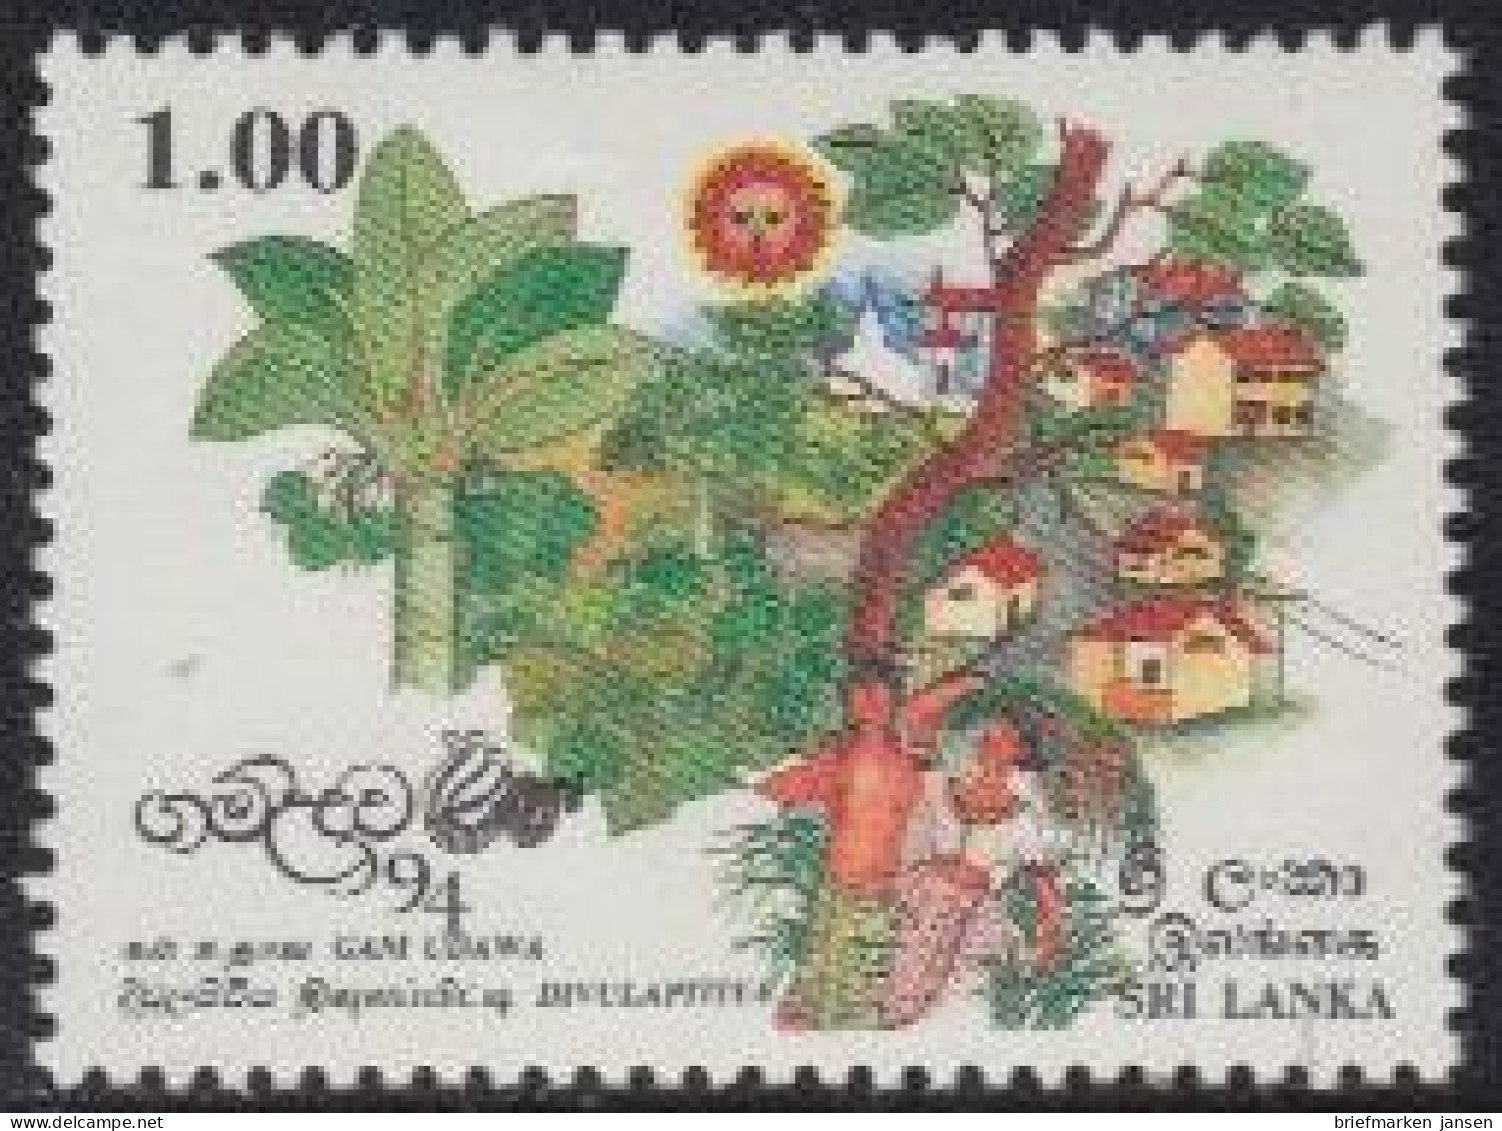 Sri Lanka Mi.Nr. 1337 Programm Für Die Erneuerung Der Dörfer (1,00) - Sri Lanka (Ceylon) (1948-...)